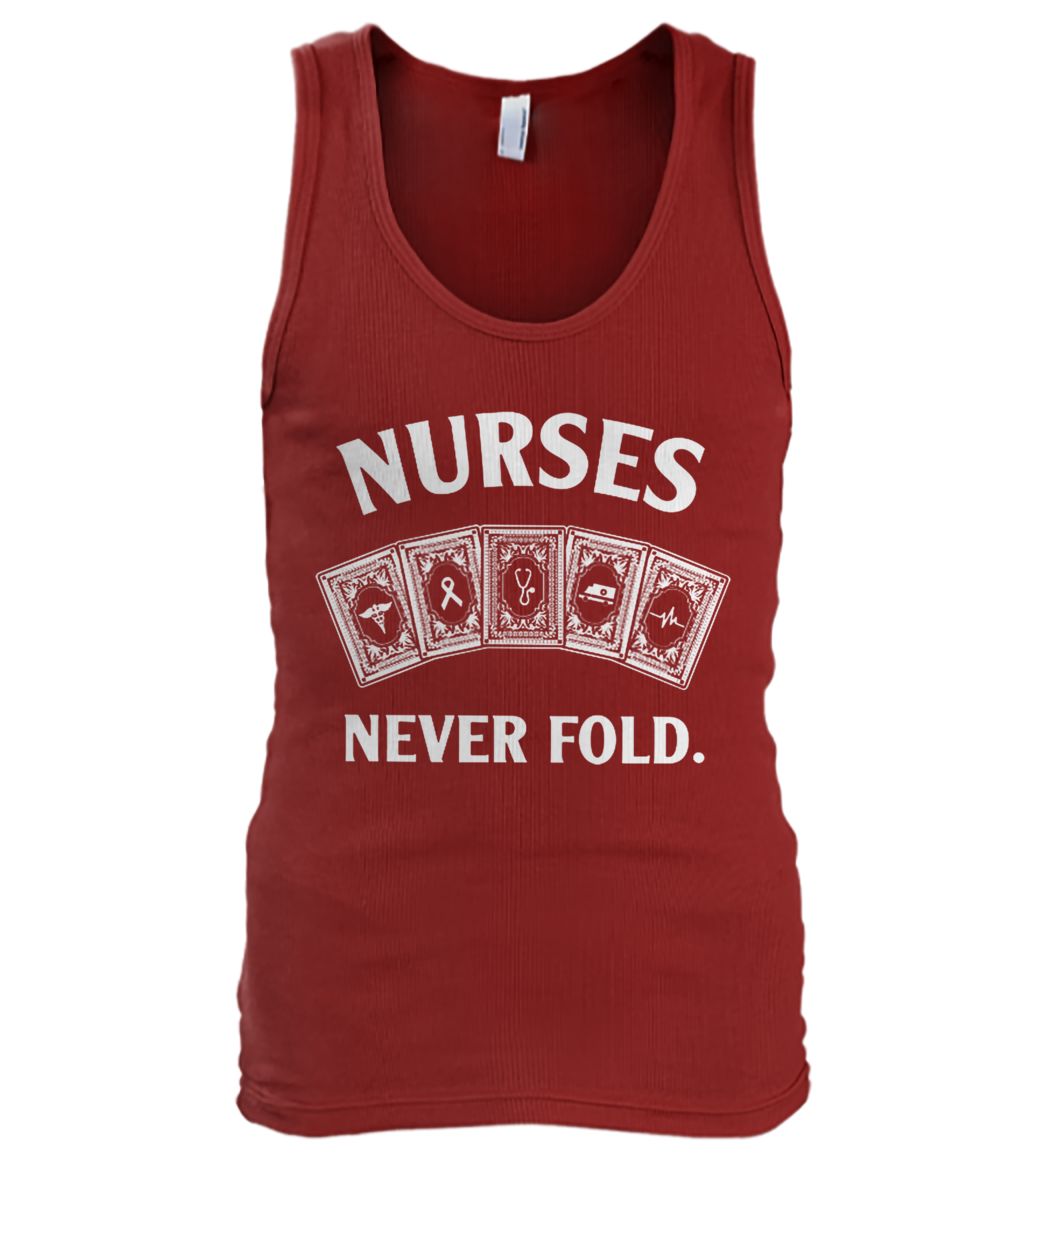 Nurse never fold men's tank top